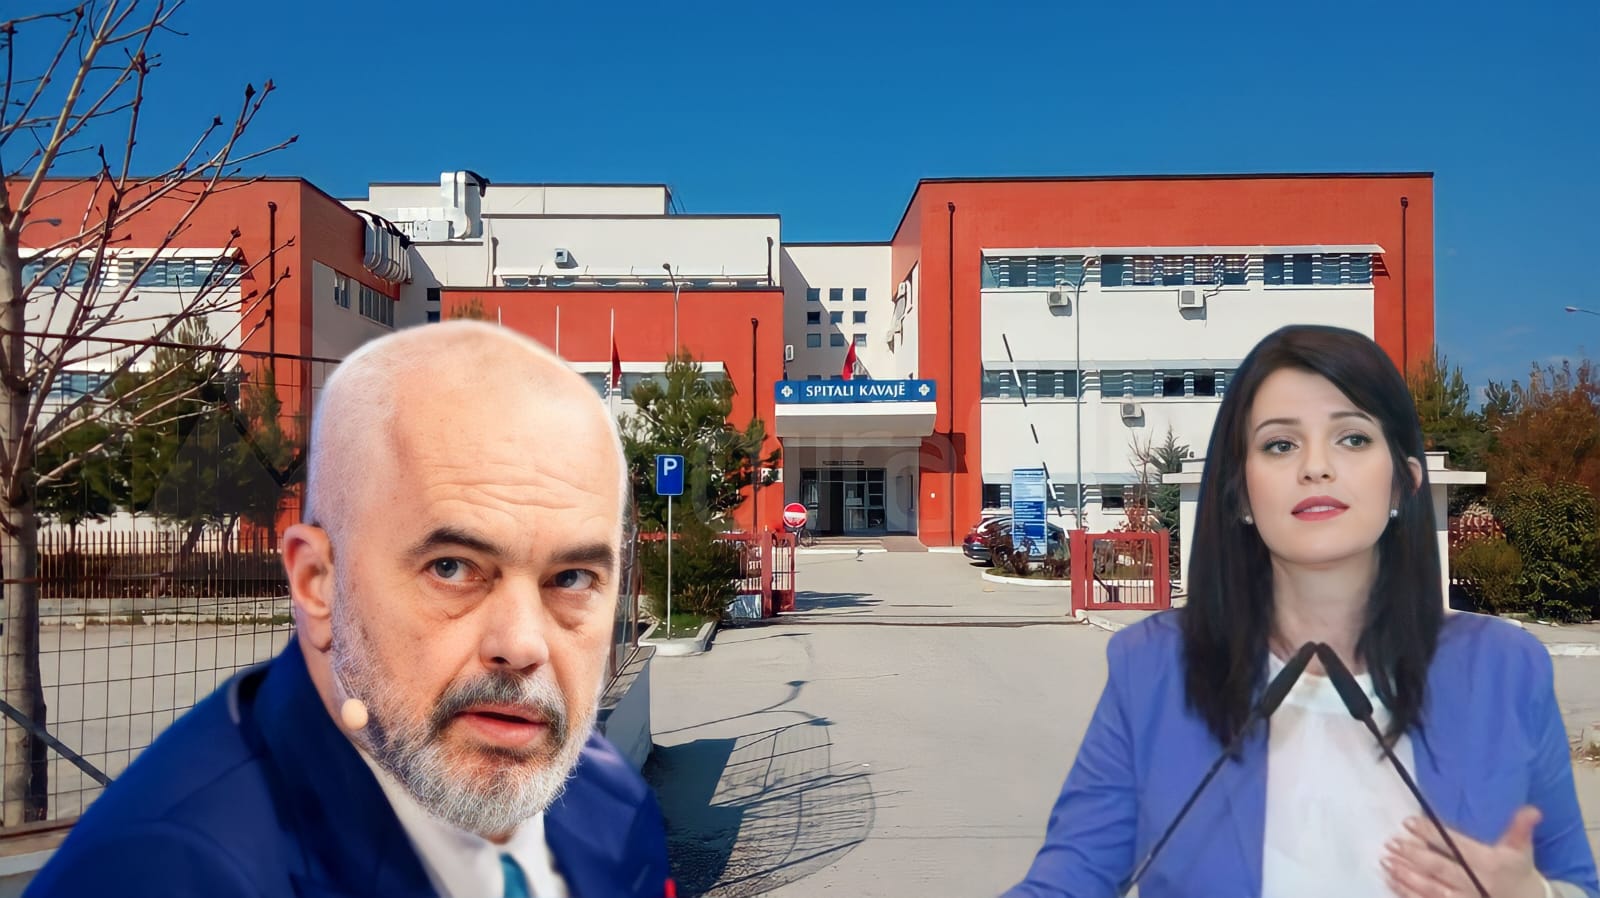 Shqiptari i Kosovës: Mu sëmur djali rëndë, spitali i Kavajës nuk kishte pediatër